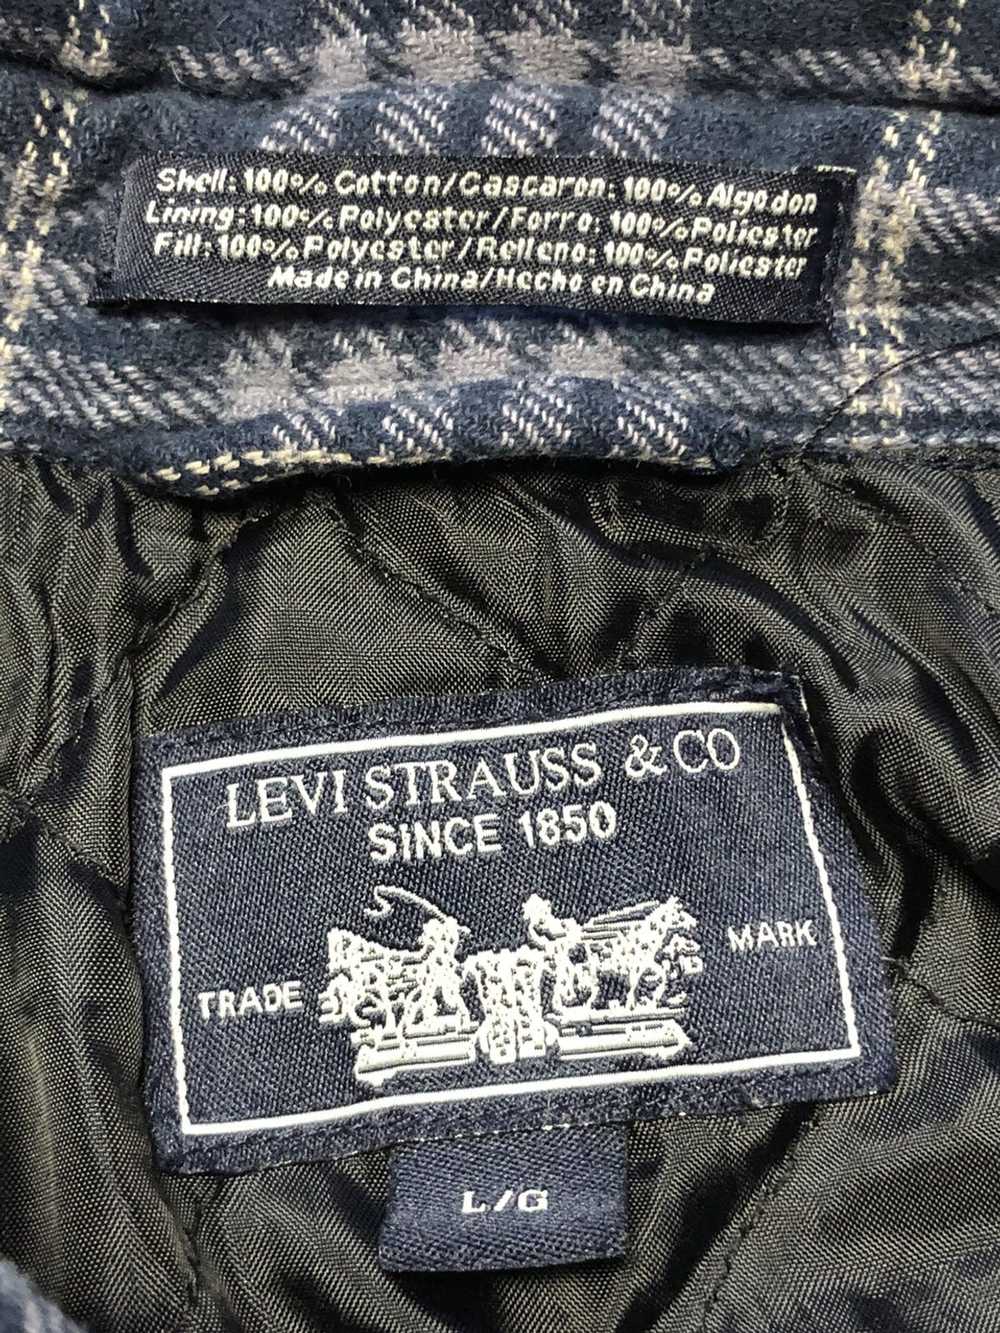 Flannel × Levi's × Levi's Vintage Clothing vintag… - image 9